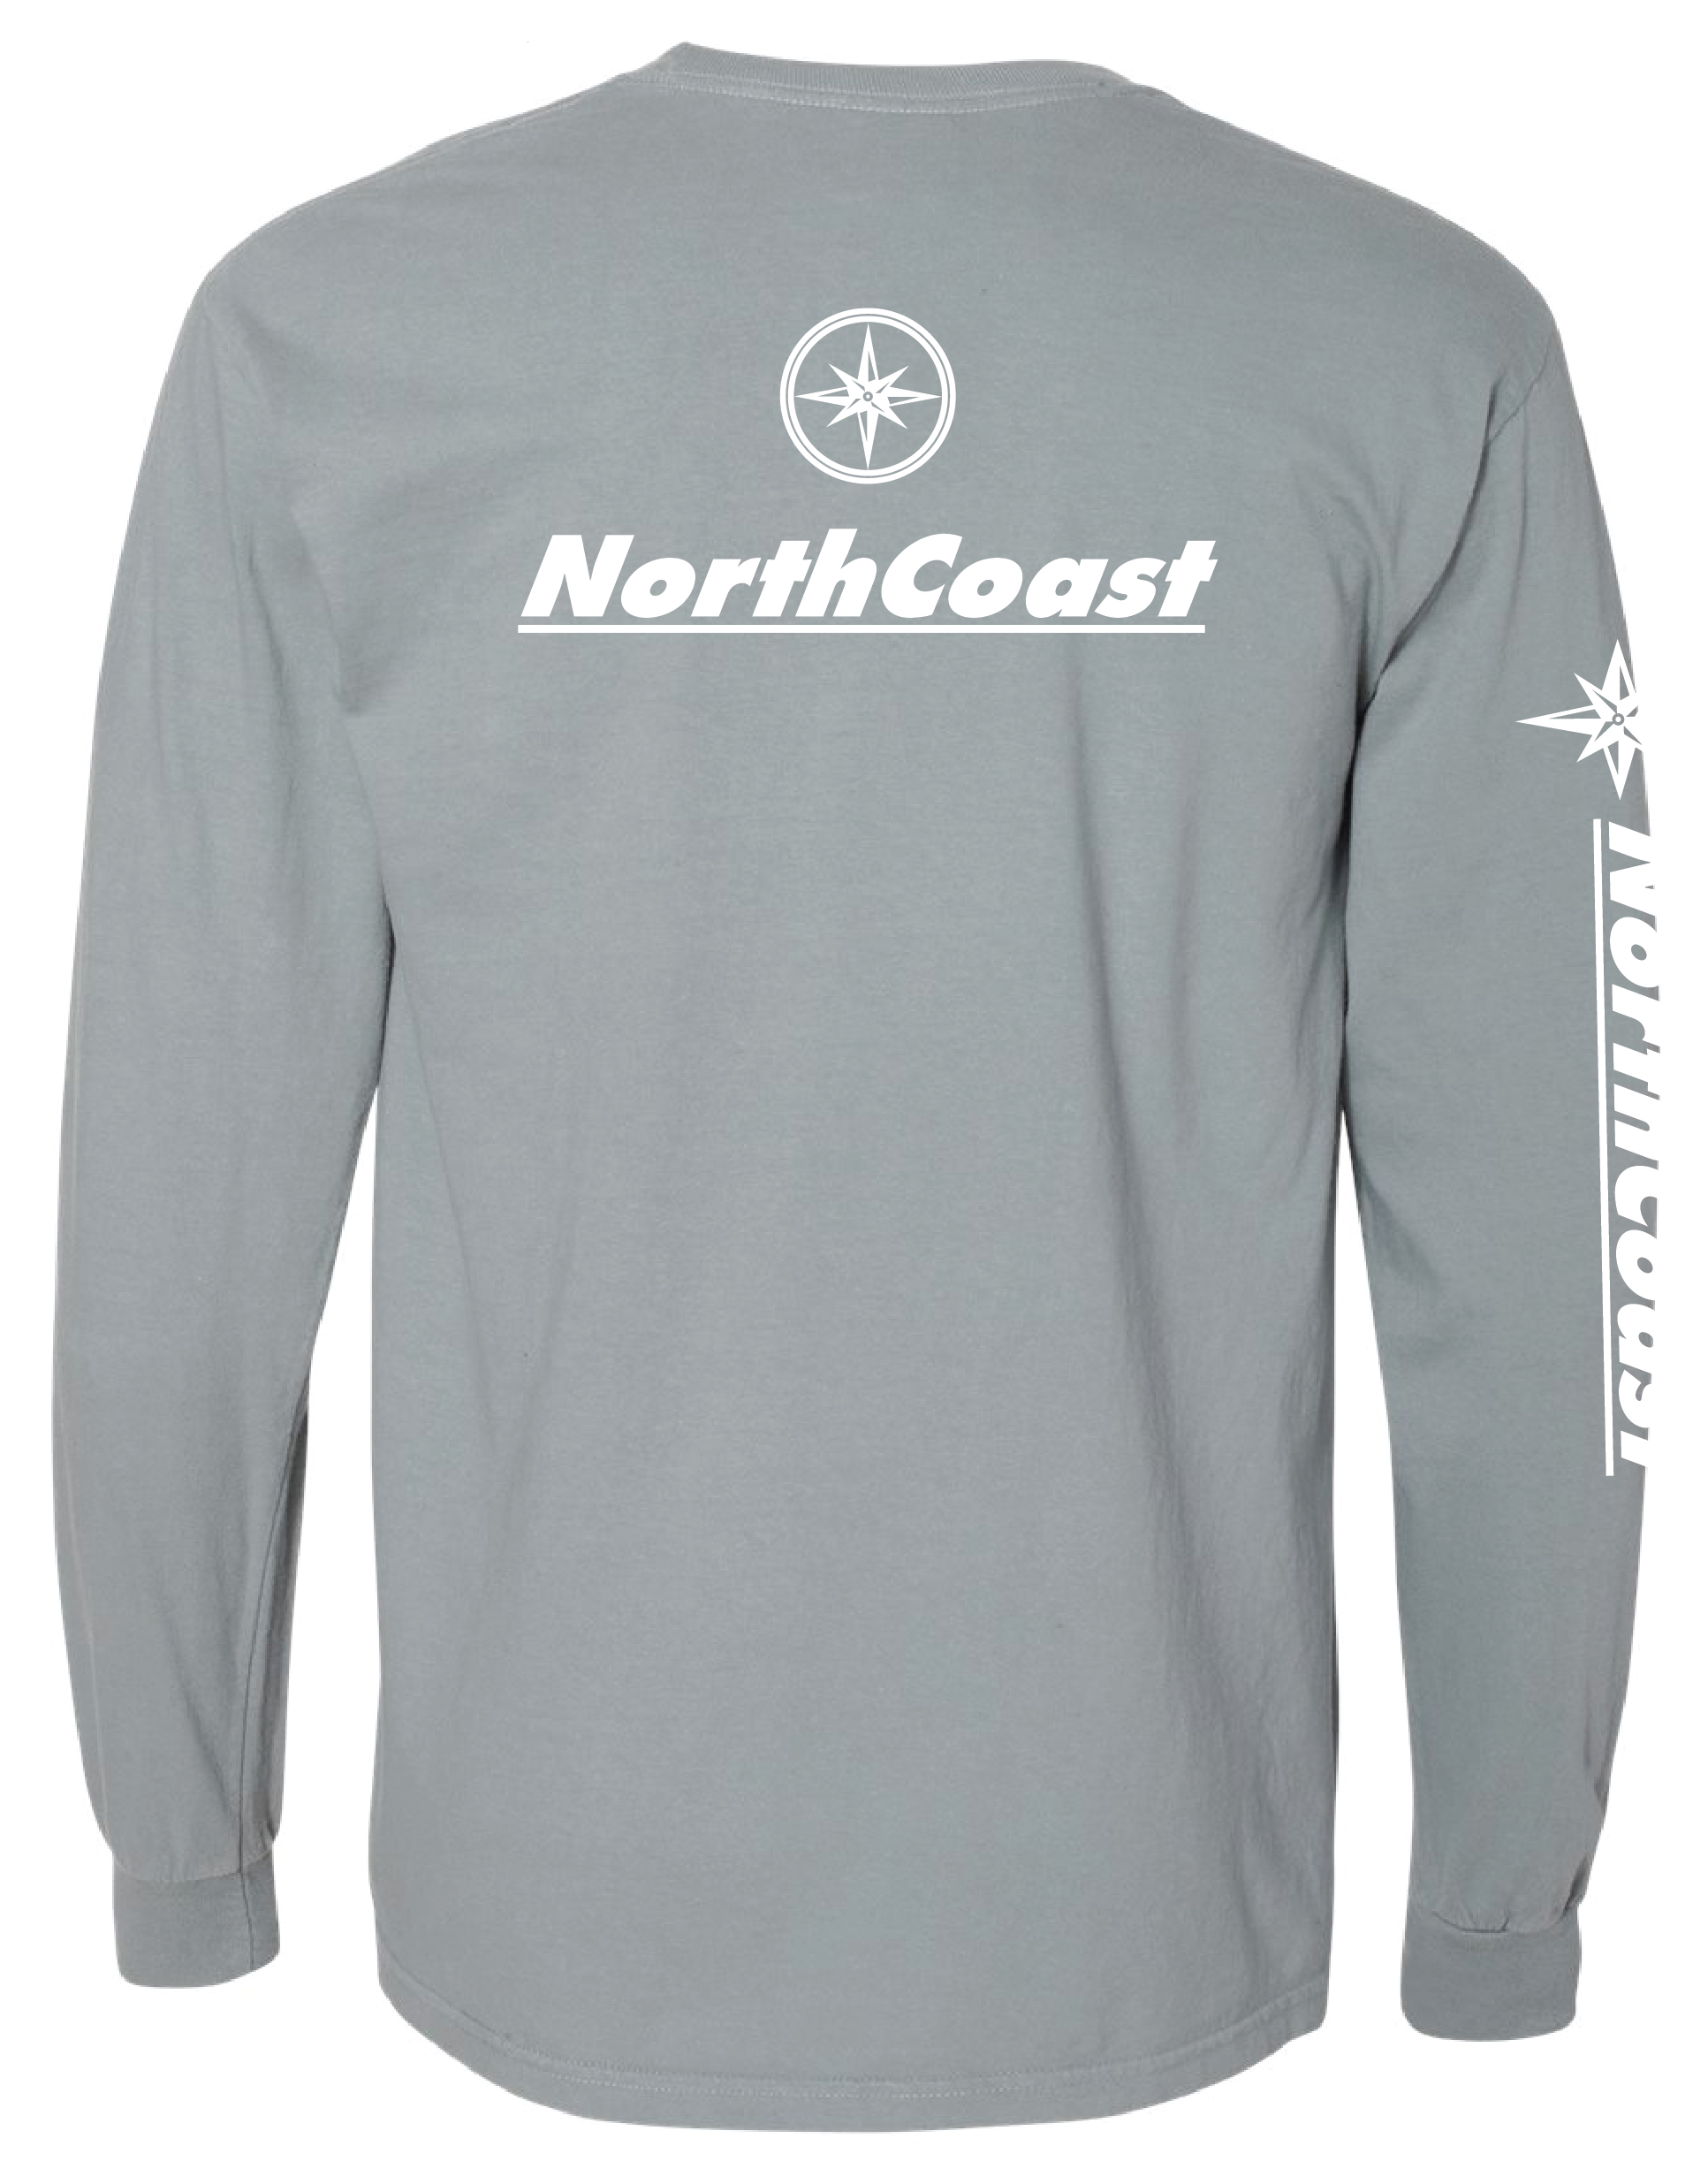 NorthCoast Boats Long Sleeve T-Shirt - Grey